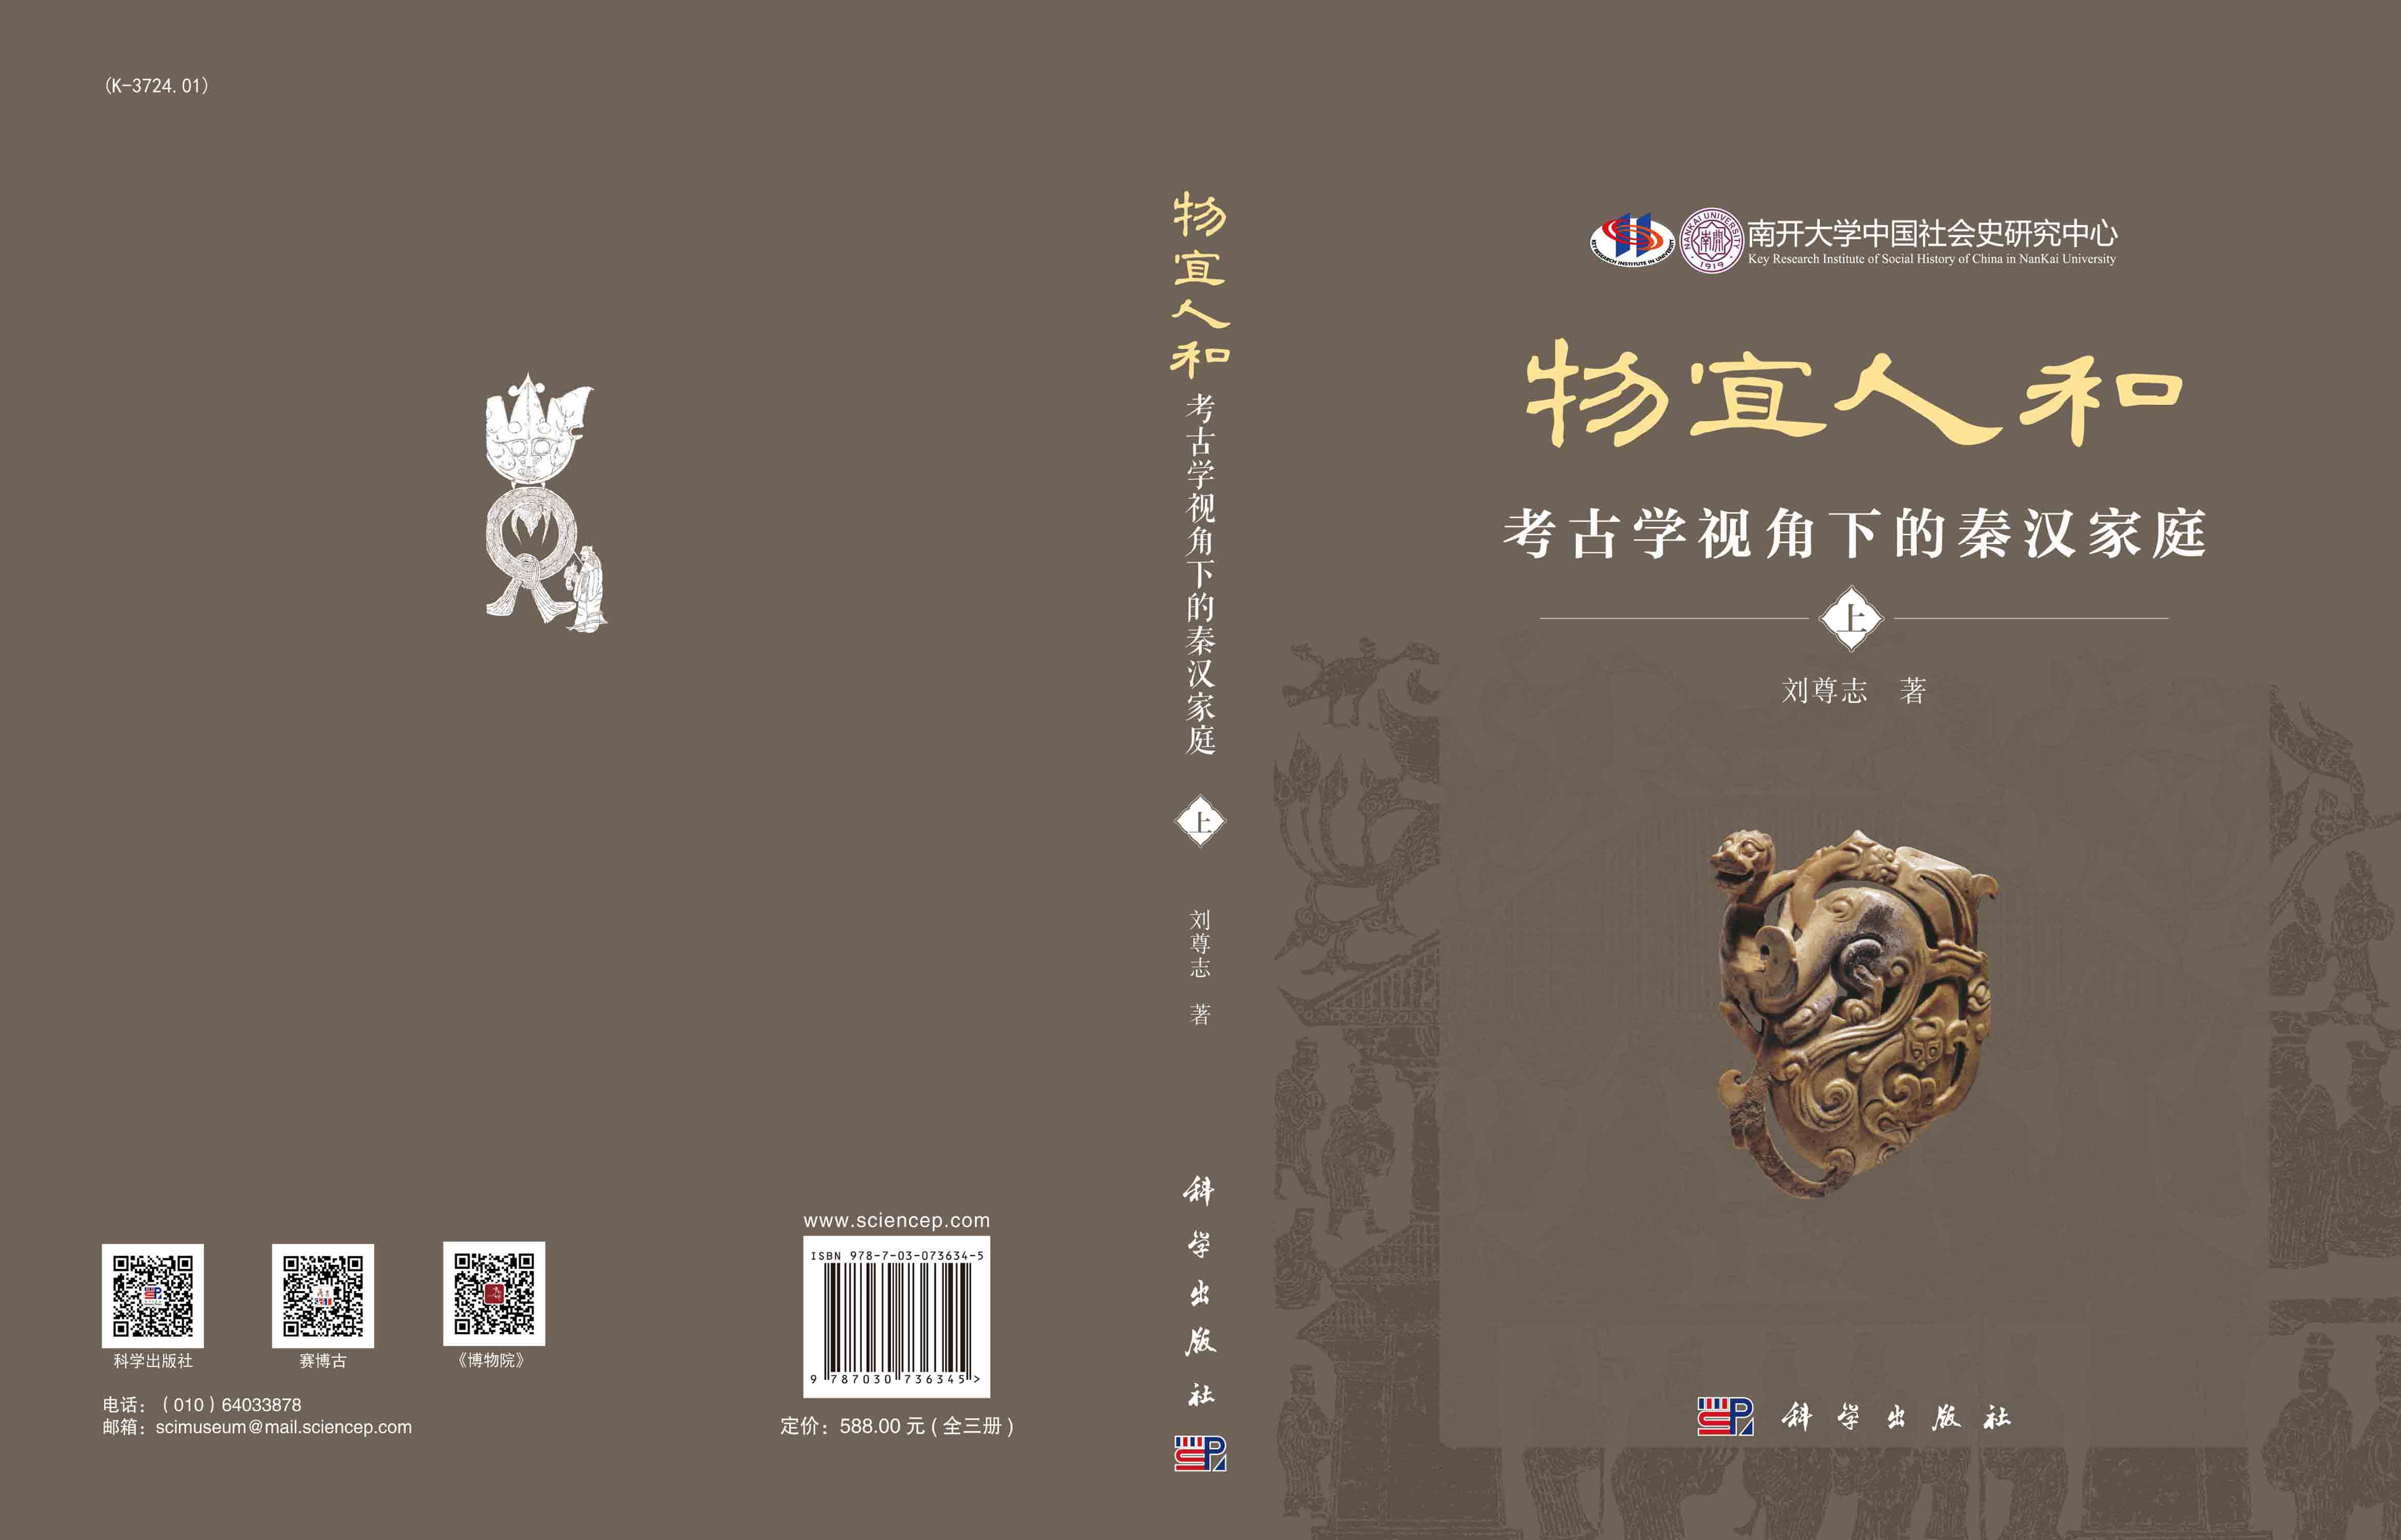 物宜人和：考古学视角下的秦汉家庭：全三册